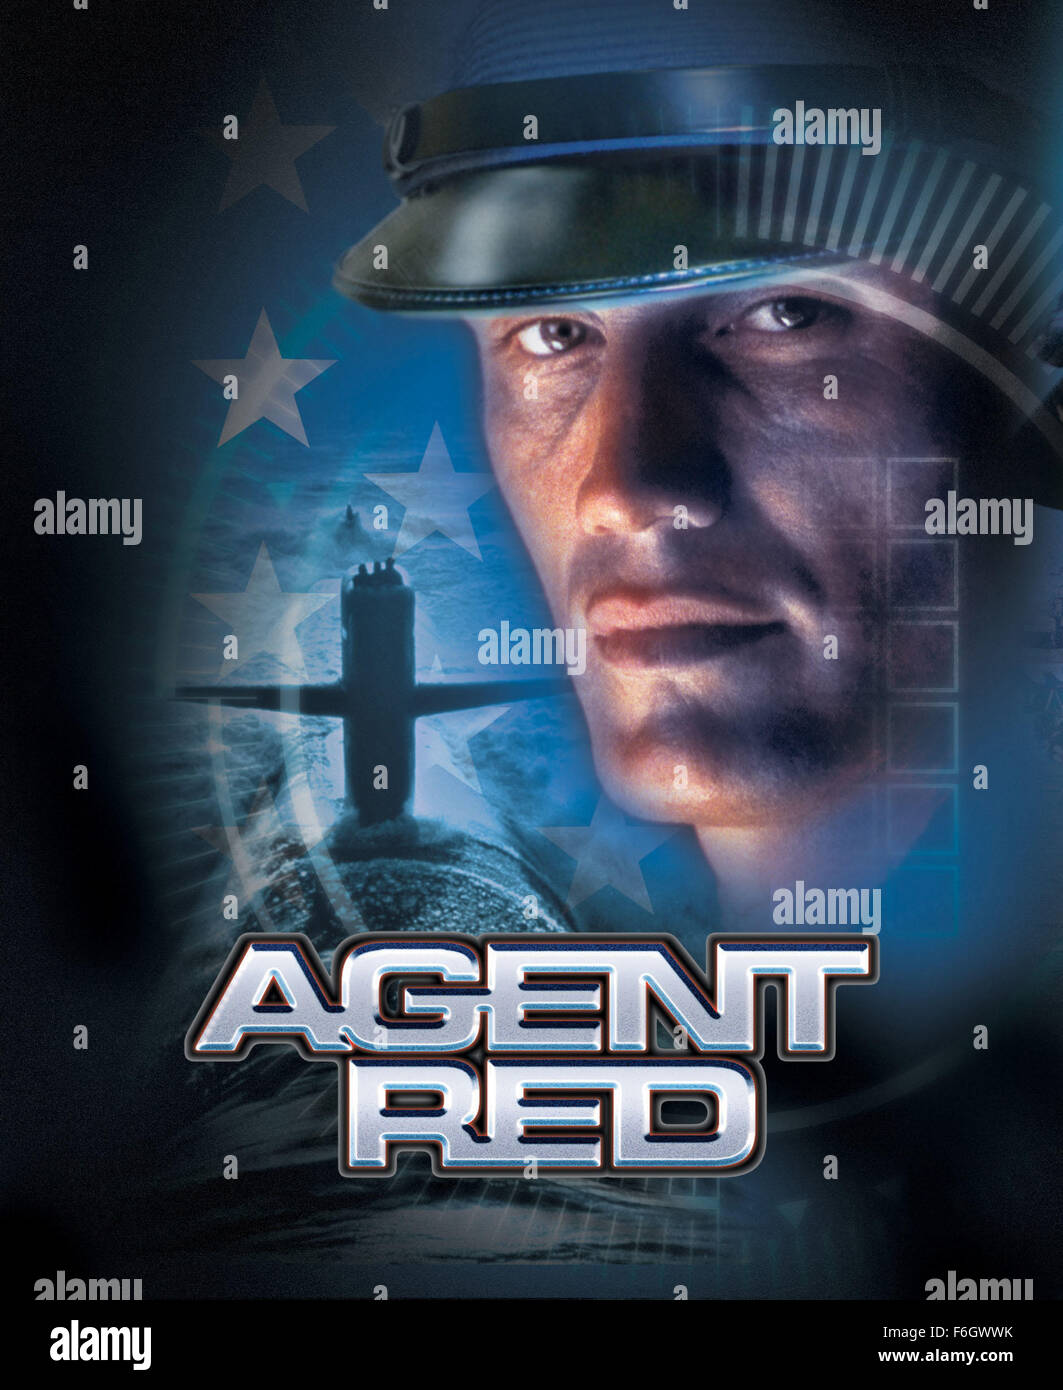 Agent red studios